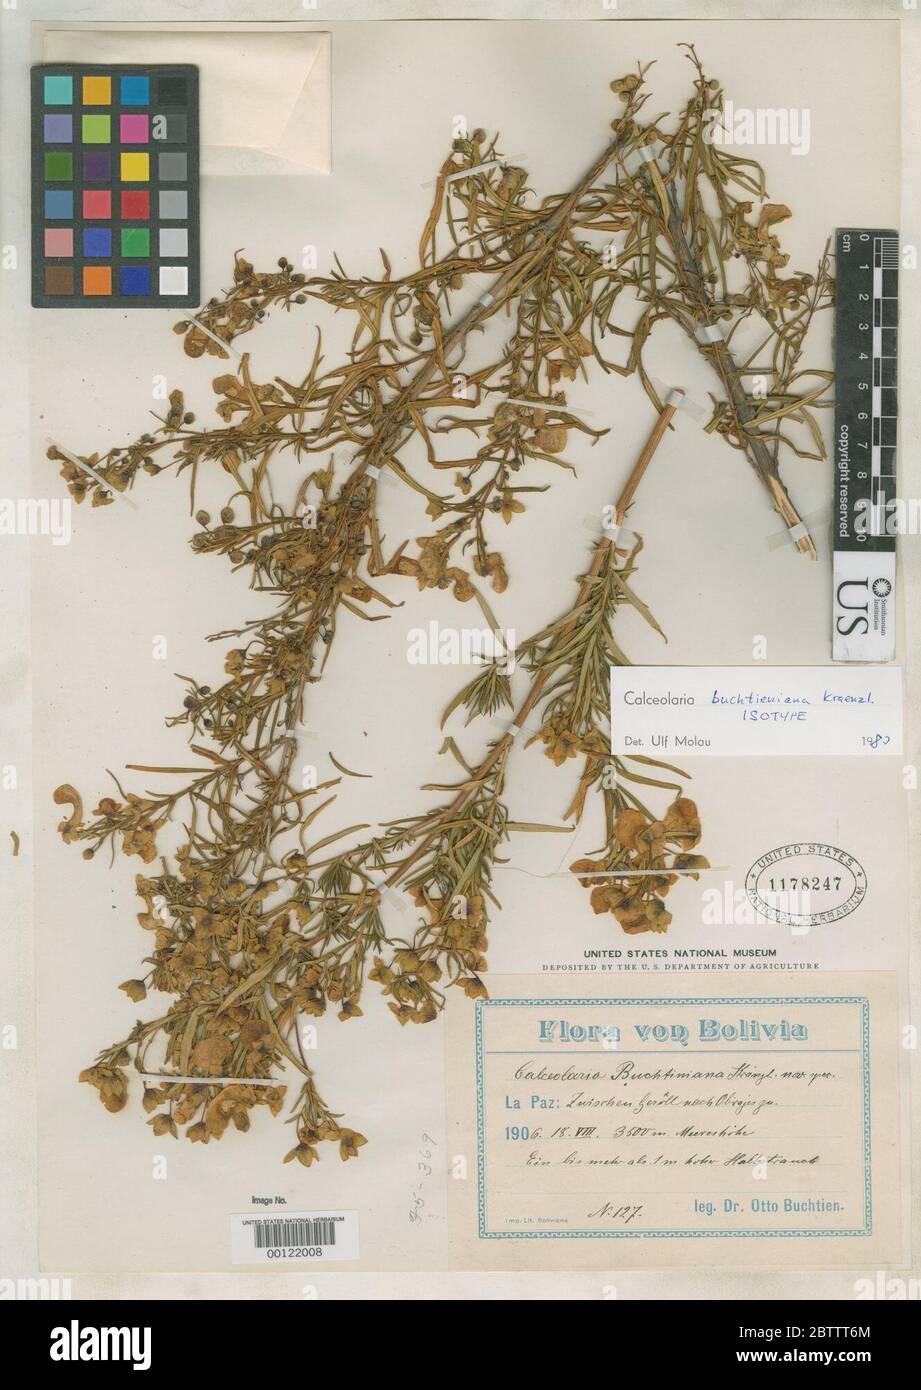 Calceolaria buchtieniana Kraenzl. Stock Photo